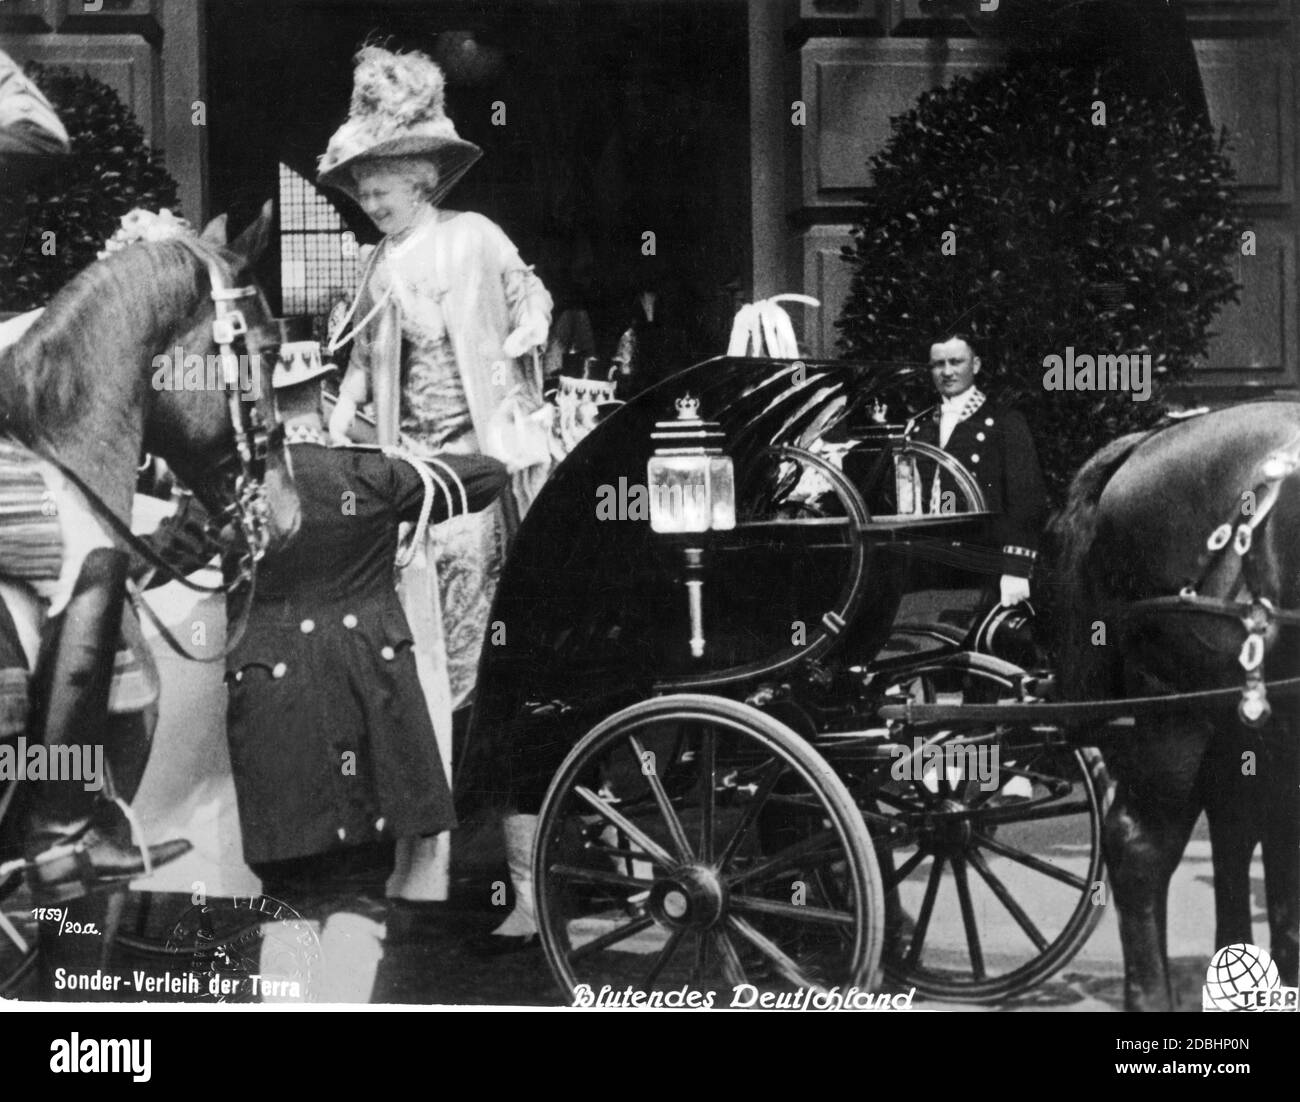 Le couple royal britannique s'est rendu à Berlin le 29 mai 1913 à l'occasion du mariage de la fille de l'empereur, la princesse Victoria Louise, au prince Welf Ernst August de Hanovre, duc de Cumberland. La photo montre le départ de la reine anglaise Mary (Mary de Teck, assise dans la calèche, couverte) et de l'impératrice allemande Augusta Victoria (au centre, debout) de Lehrter Bahnhof. Banque D'Images